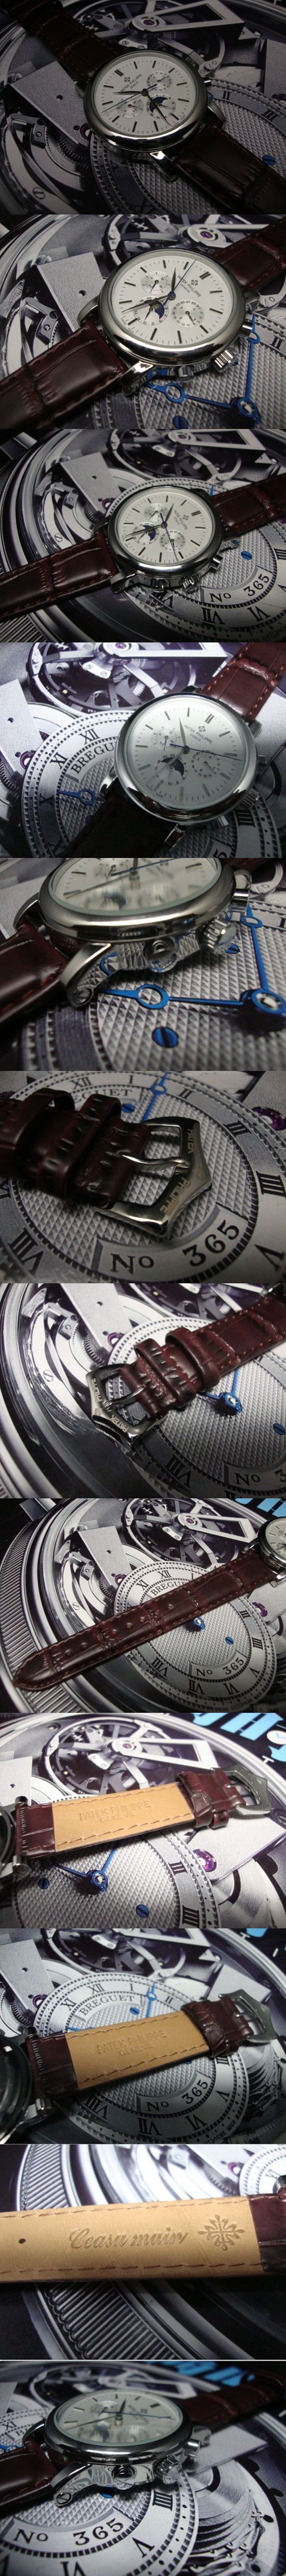 おしゃれなブランド時計がPATEK PHILIPPE-パテック フィリップ腕時計 パテック フィリップ 男/女腕時計 PATEK-PHILIPPE-N-005A を提供します.